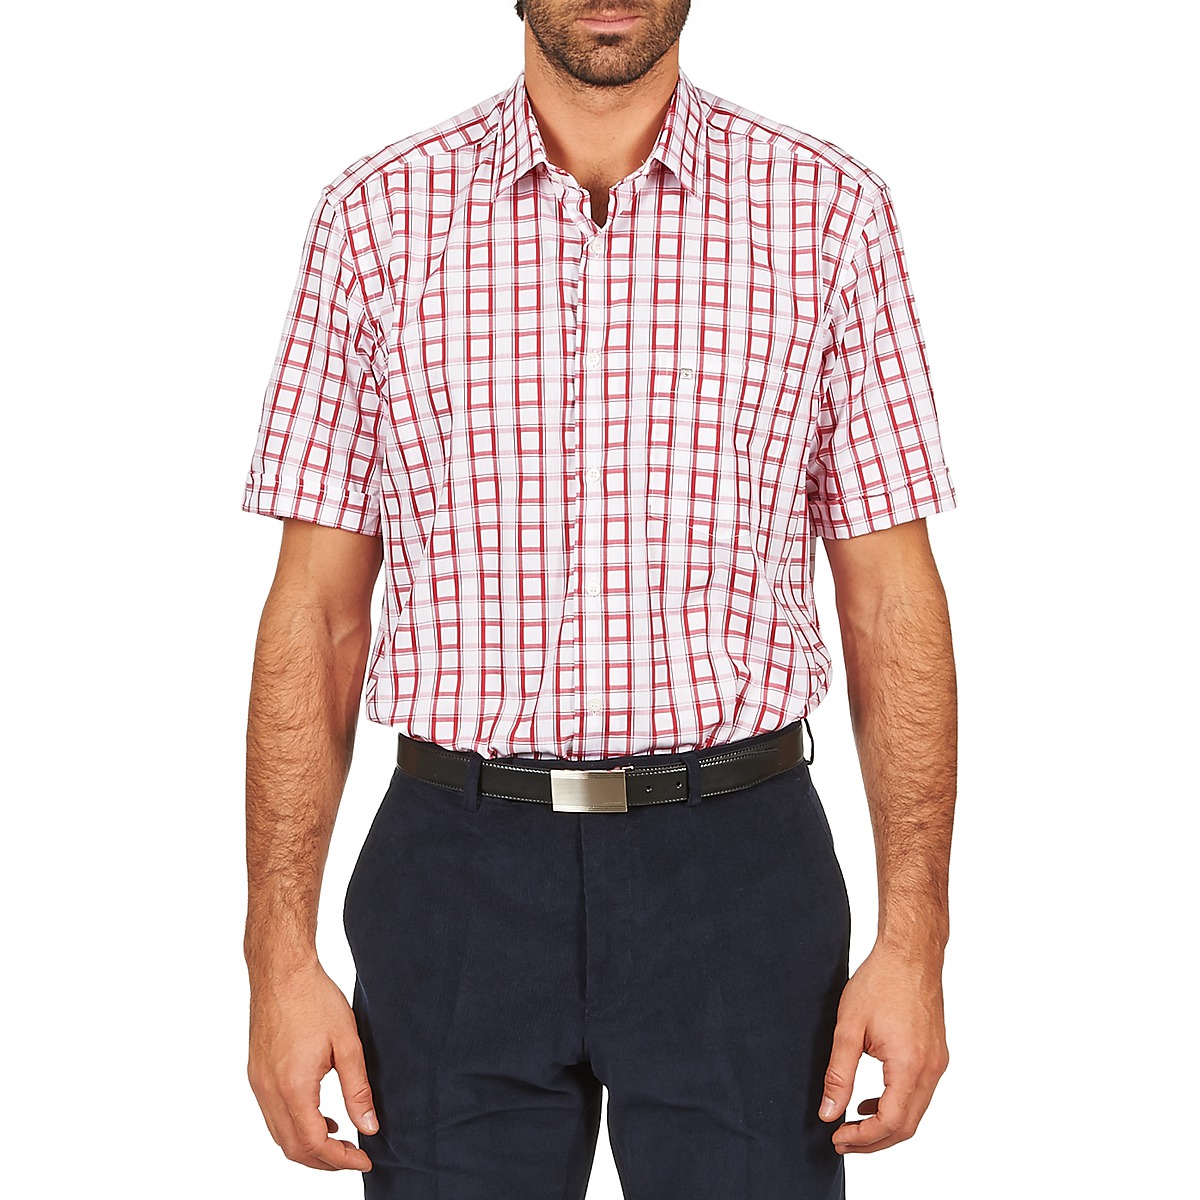 Vêtements Homme Chemises manches courtes Pierre Cardin CH MC CARREAU GRAPHIQUE Blanc / Rouge